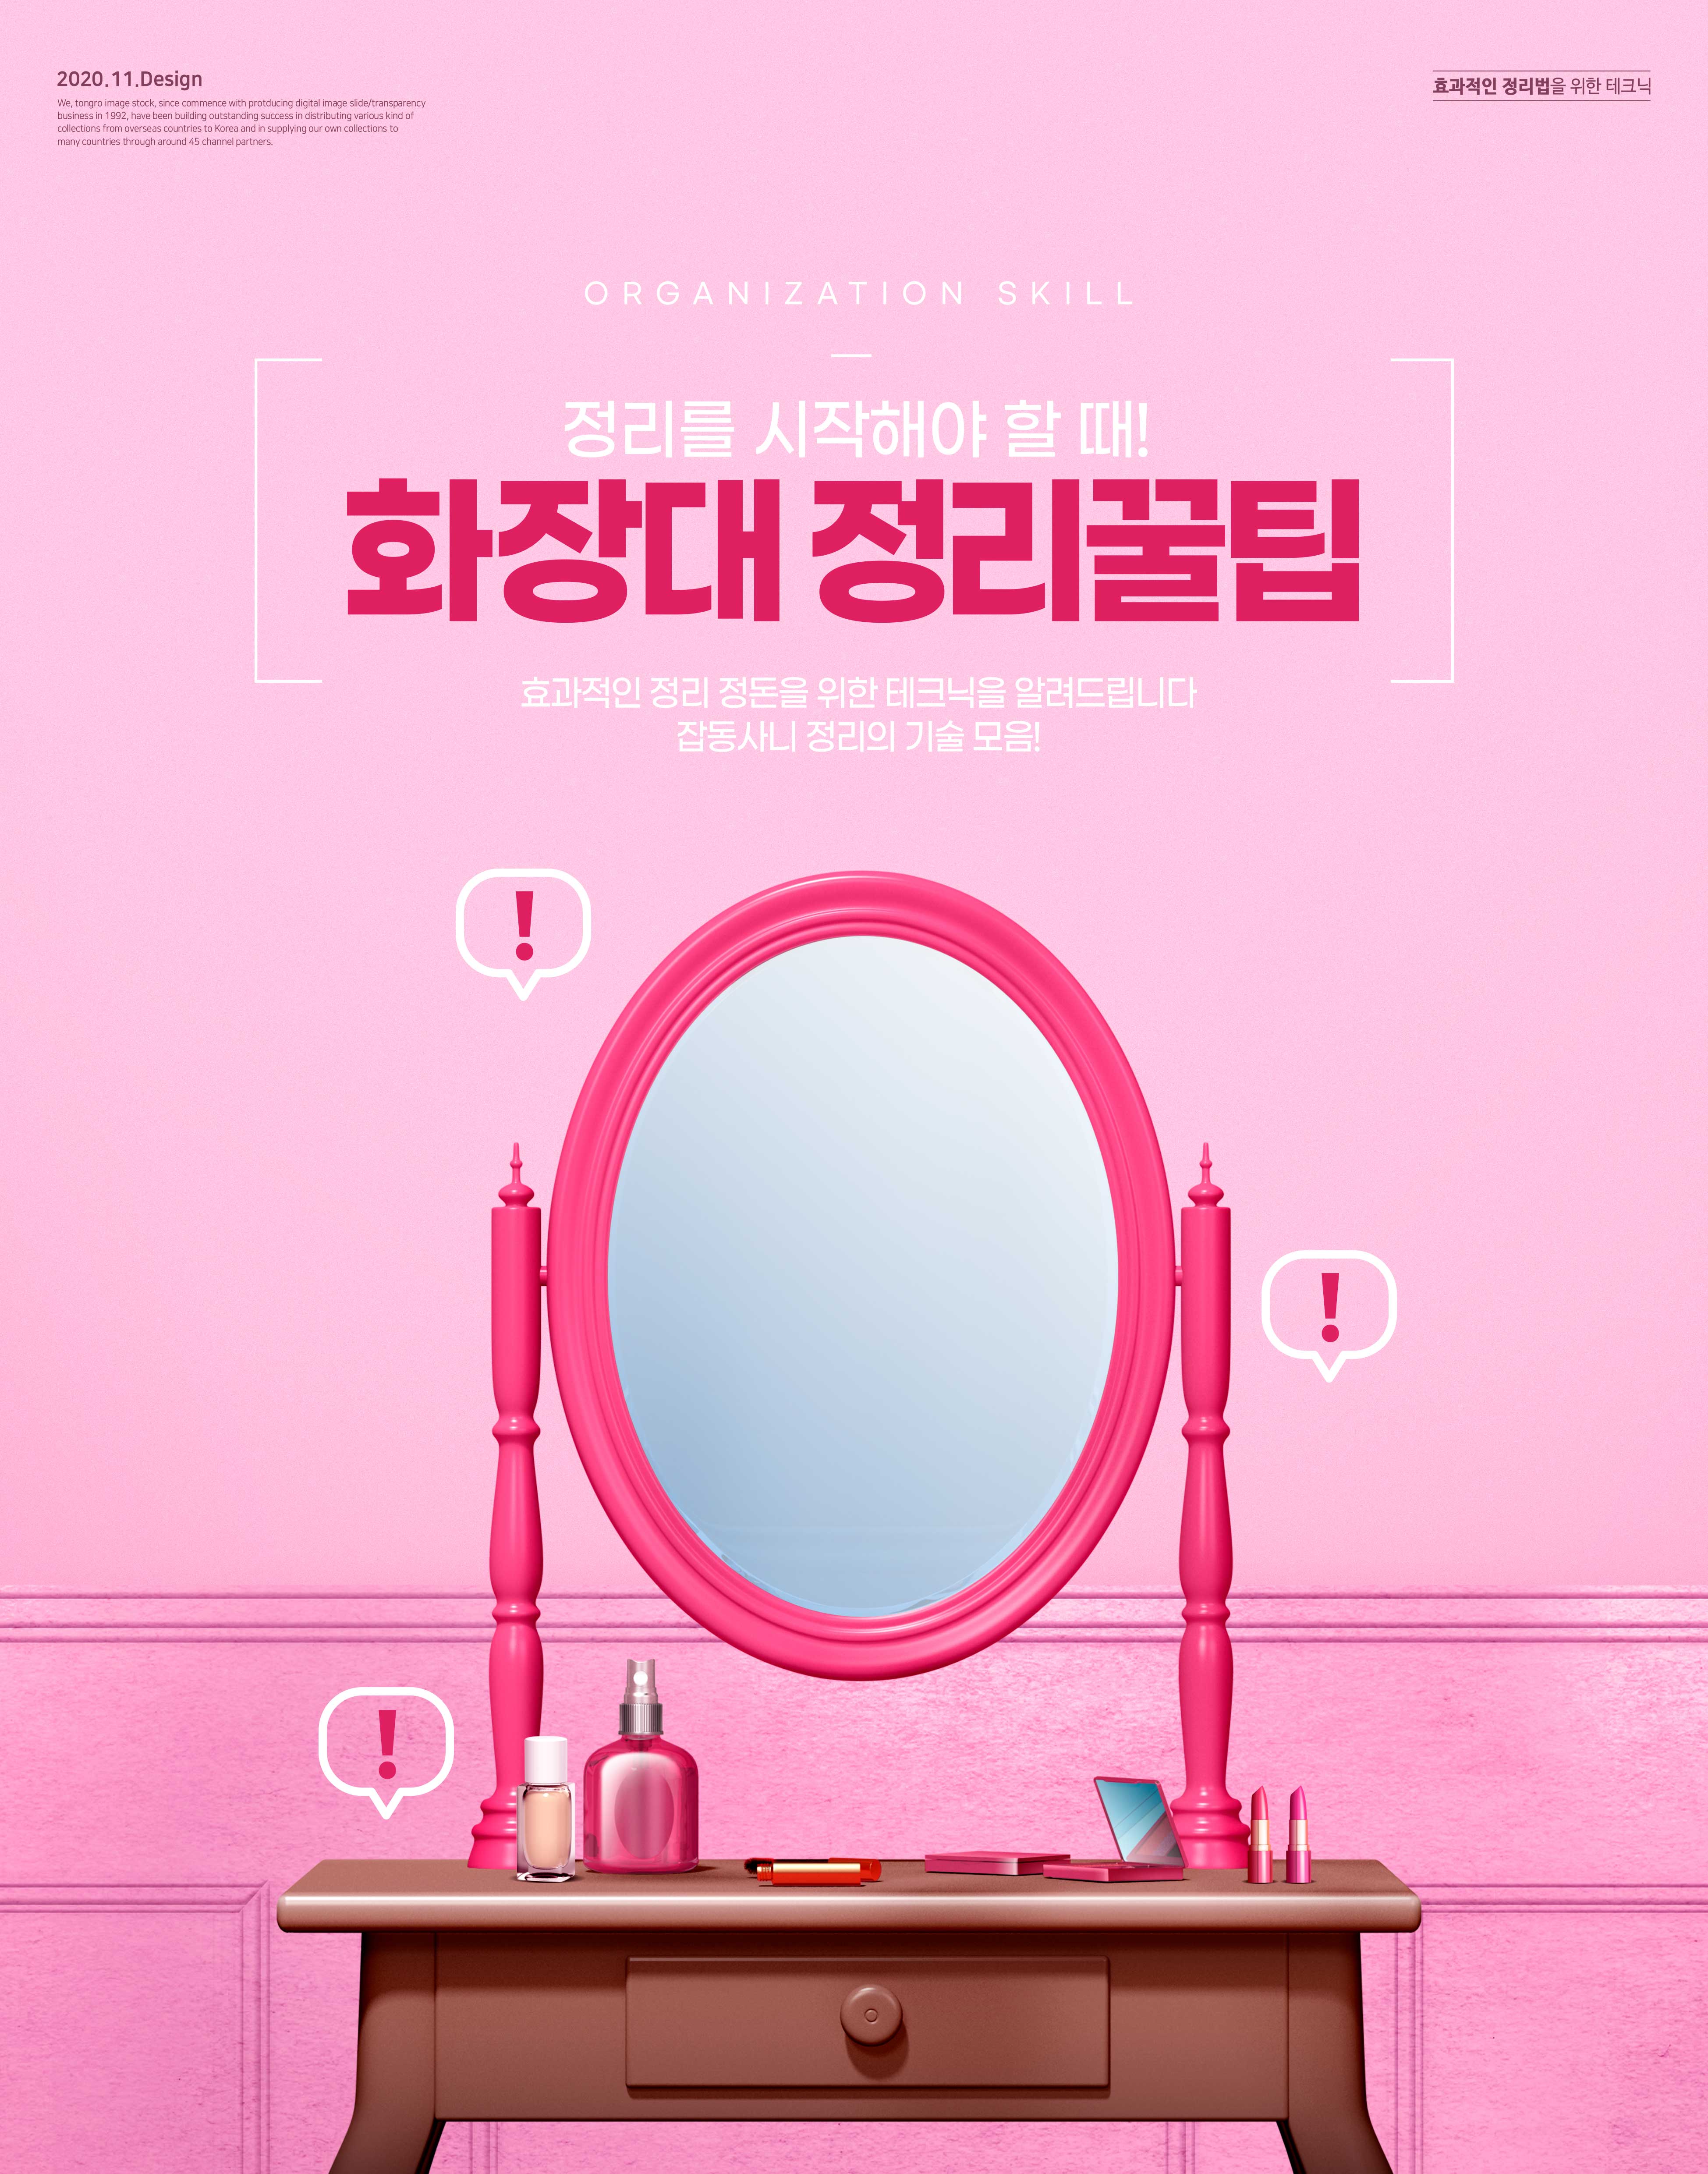 梳妆台整理主题海报设计韩国素材